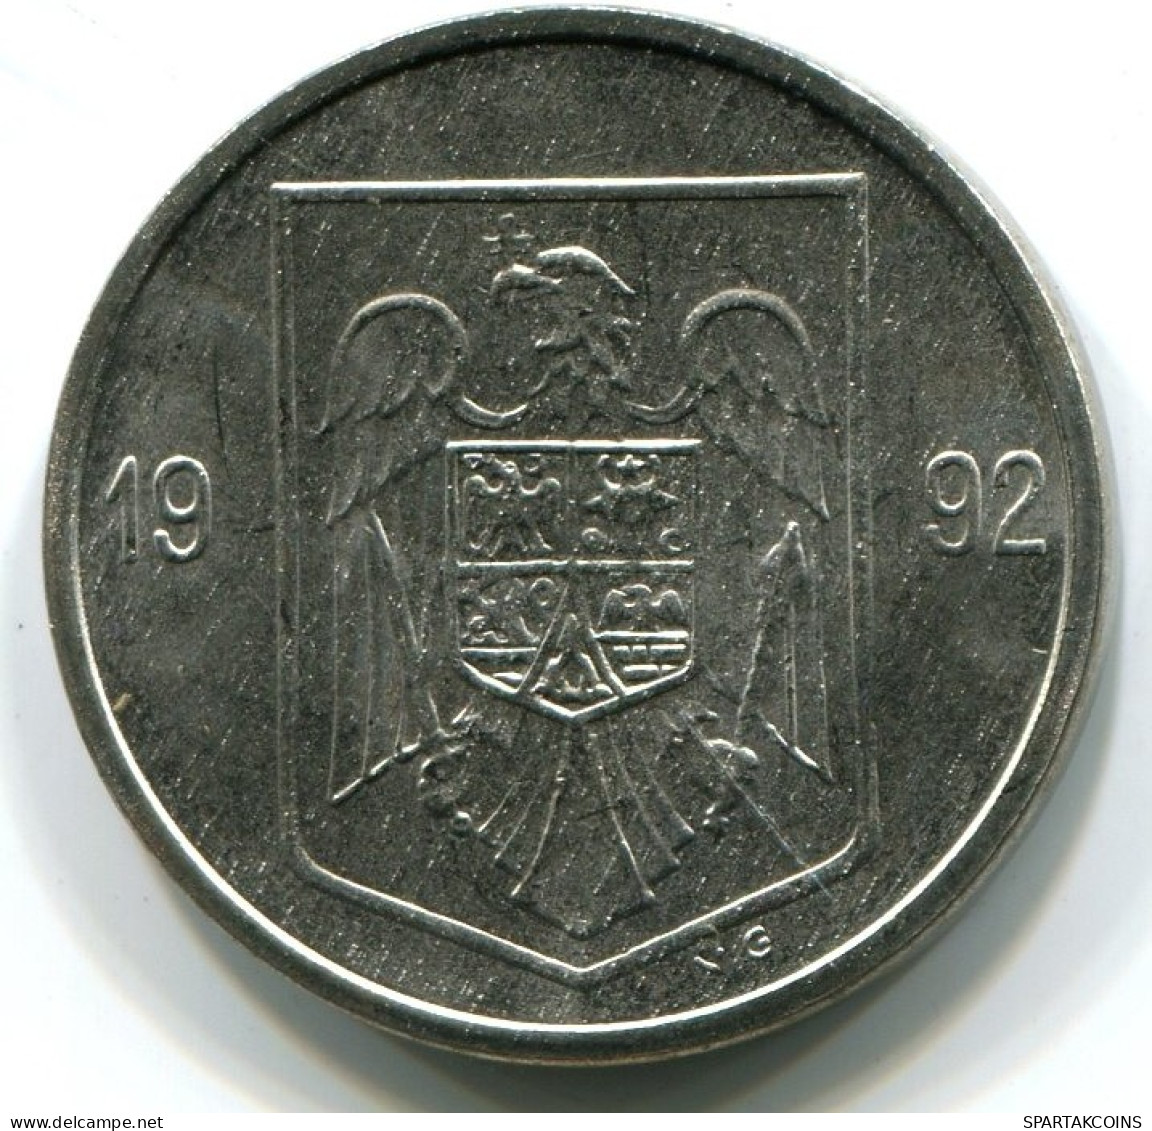 5 LEI 1992 ROMÁN OMANIA UNC Eagle Coat Of Arms V.G Mark Moneda #W11351.E.A - Rumania